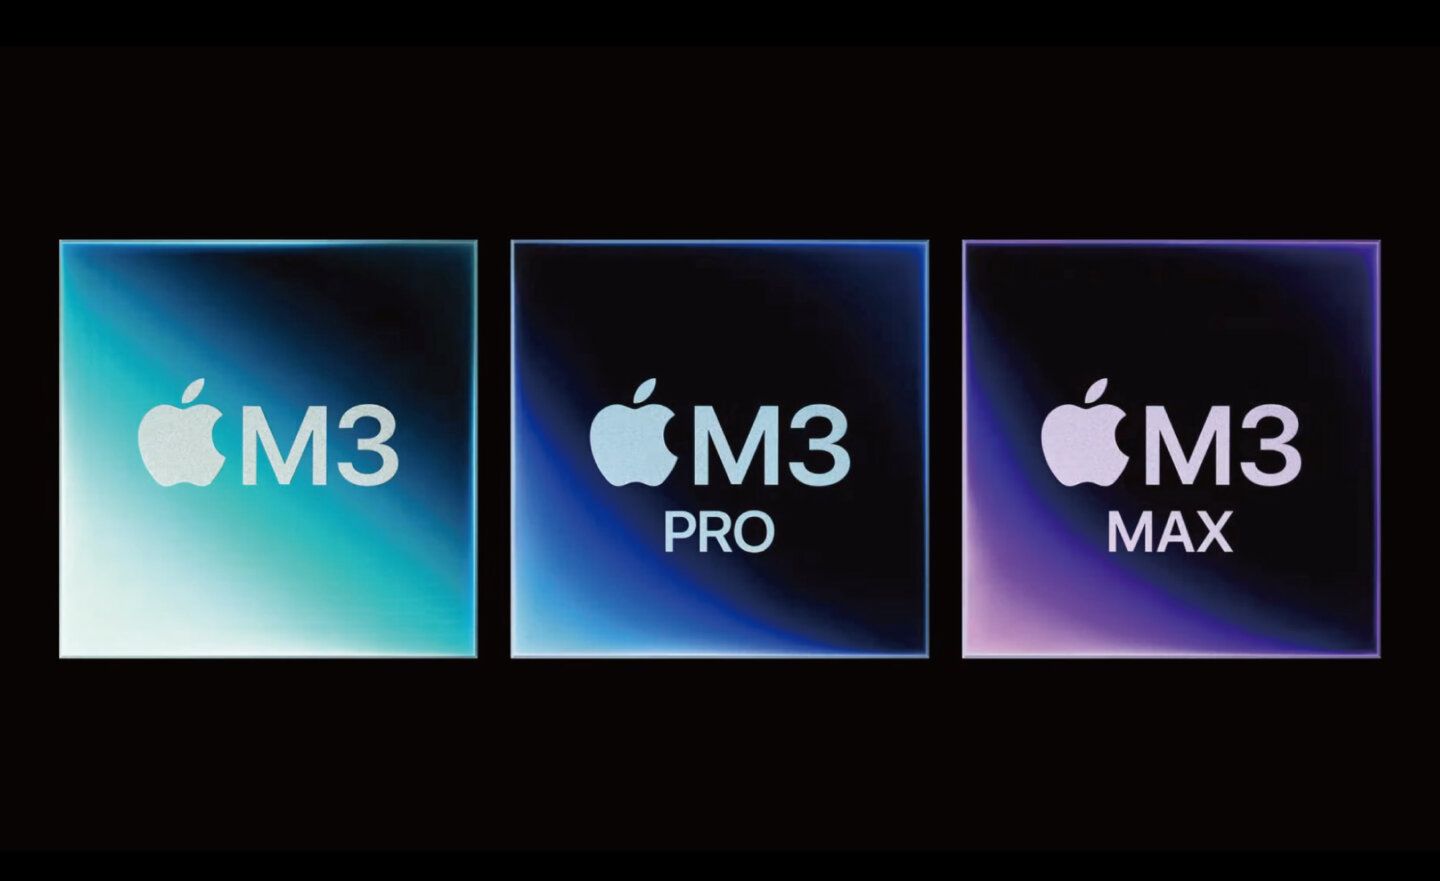 【Apple 10/31 發表會】蘋果 M3、M3 Pro 和 M3 Max 晶片亮相，主打 3 奈米技術、動態快取 GPU